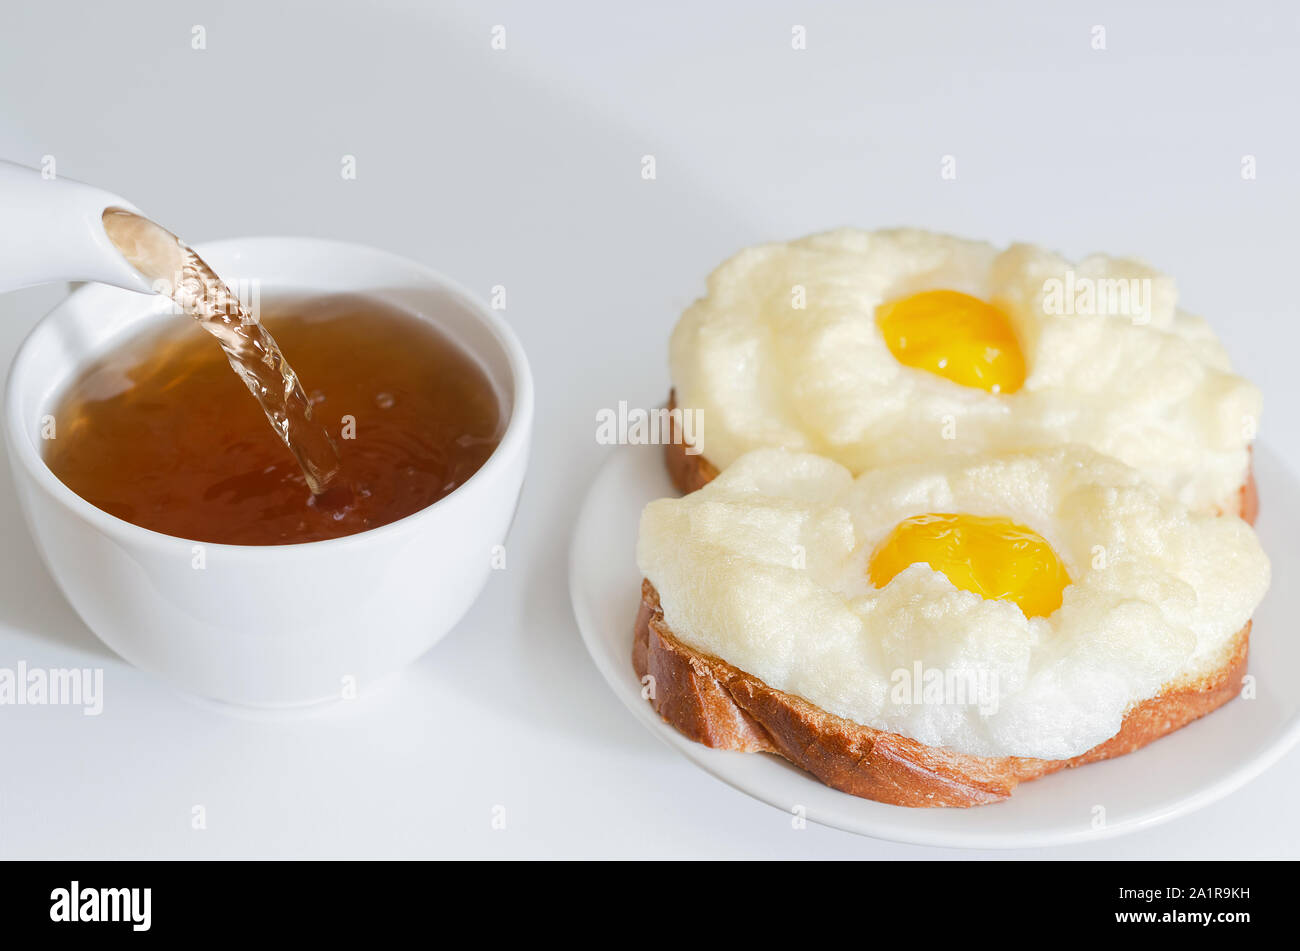 Chaud, sandwichs aux œufs cuits au four pour le petit-déjeuner. Verser dans une tasse de thé. Selective focus Banque D'Images